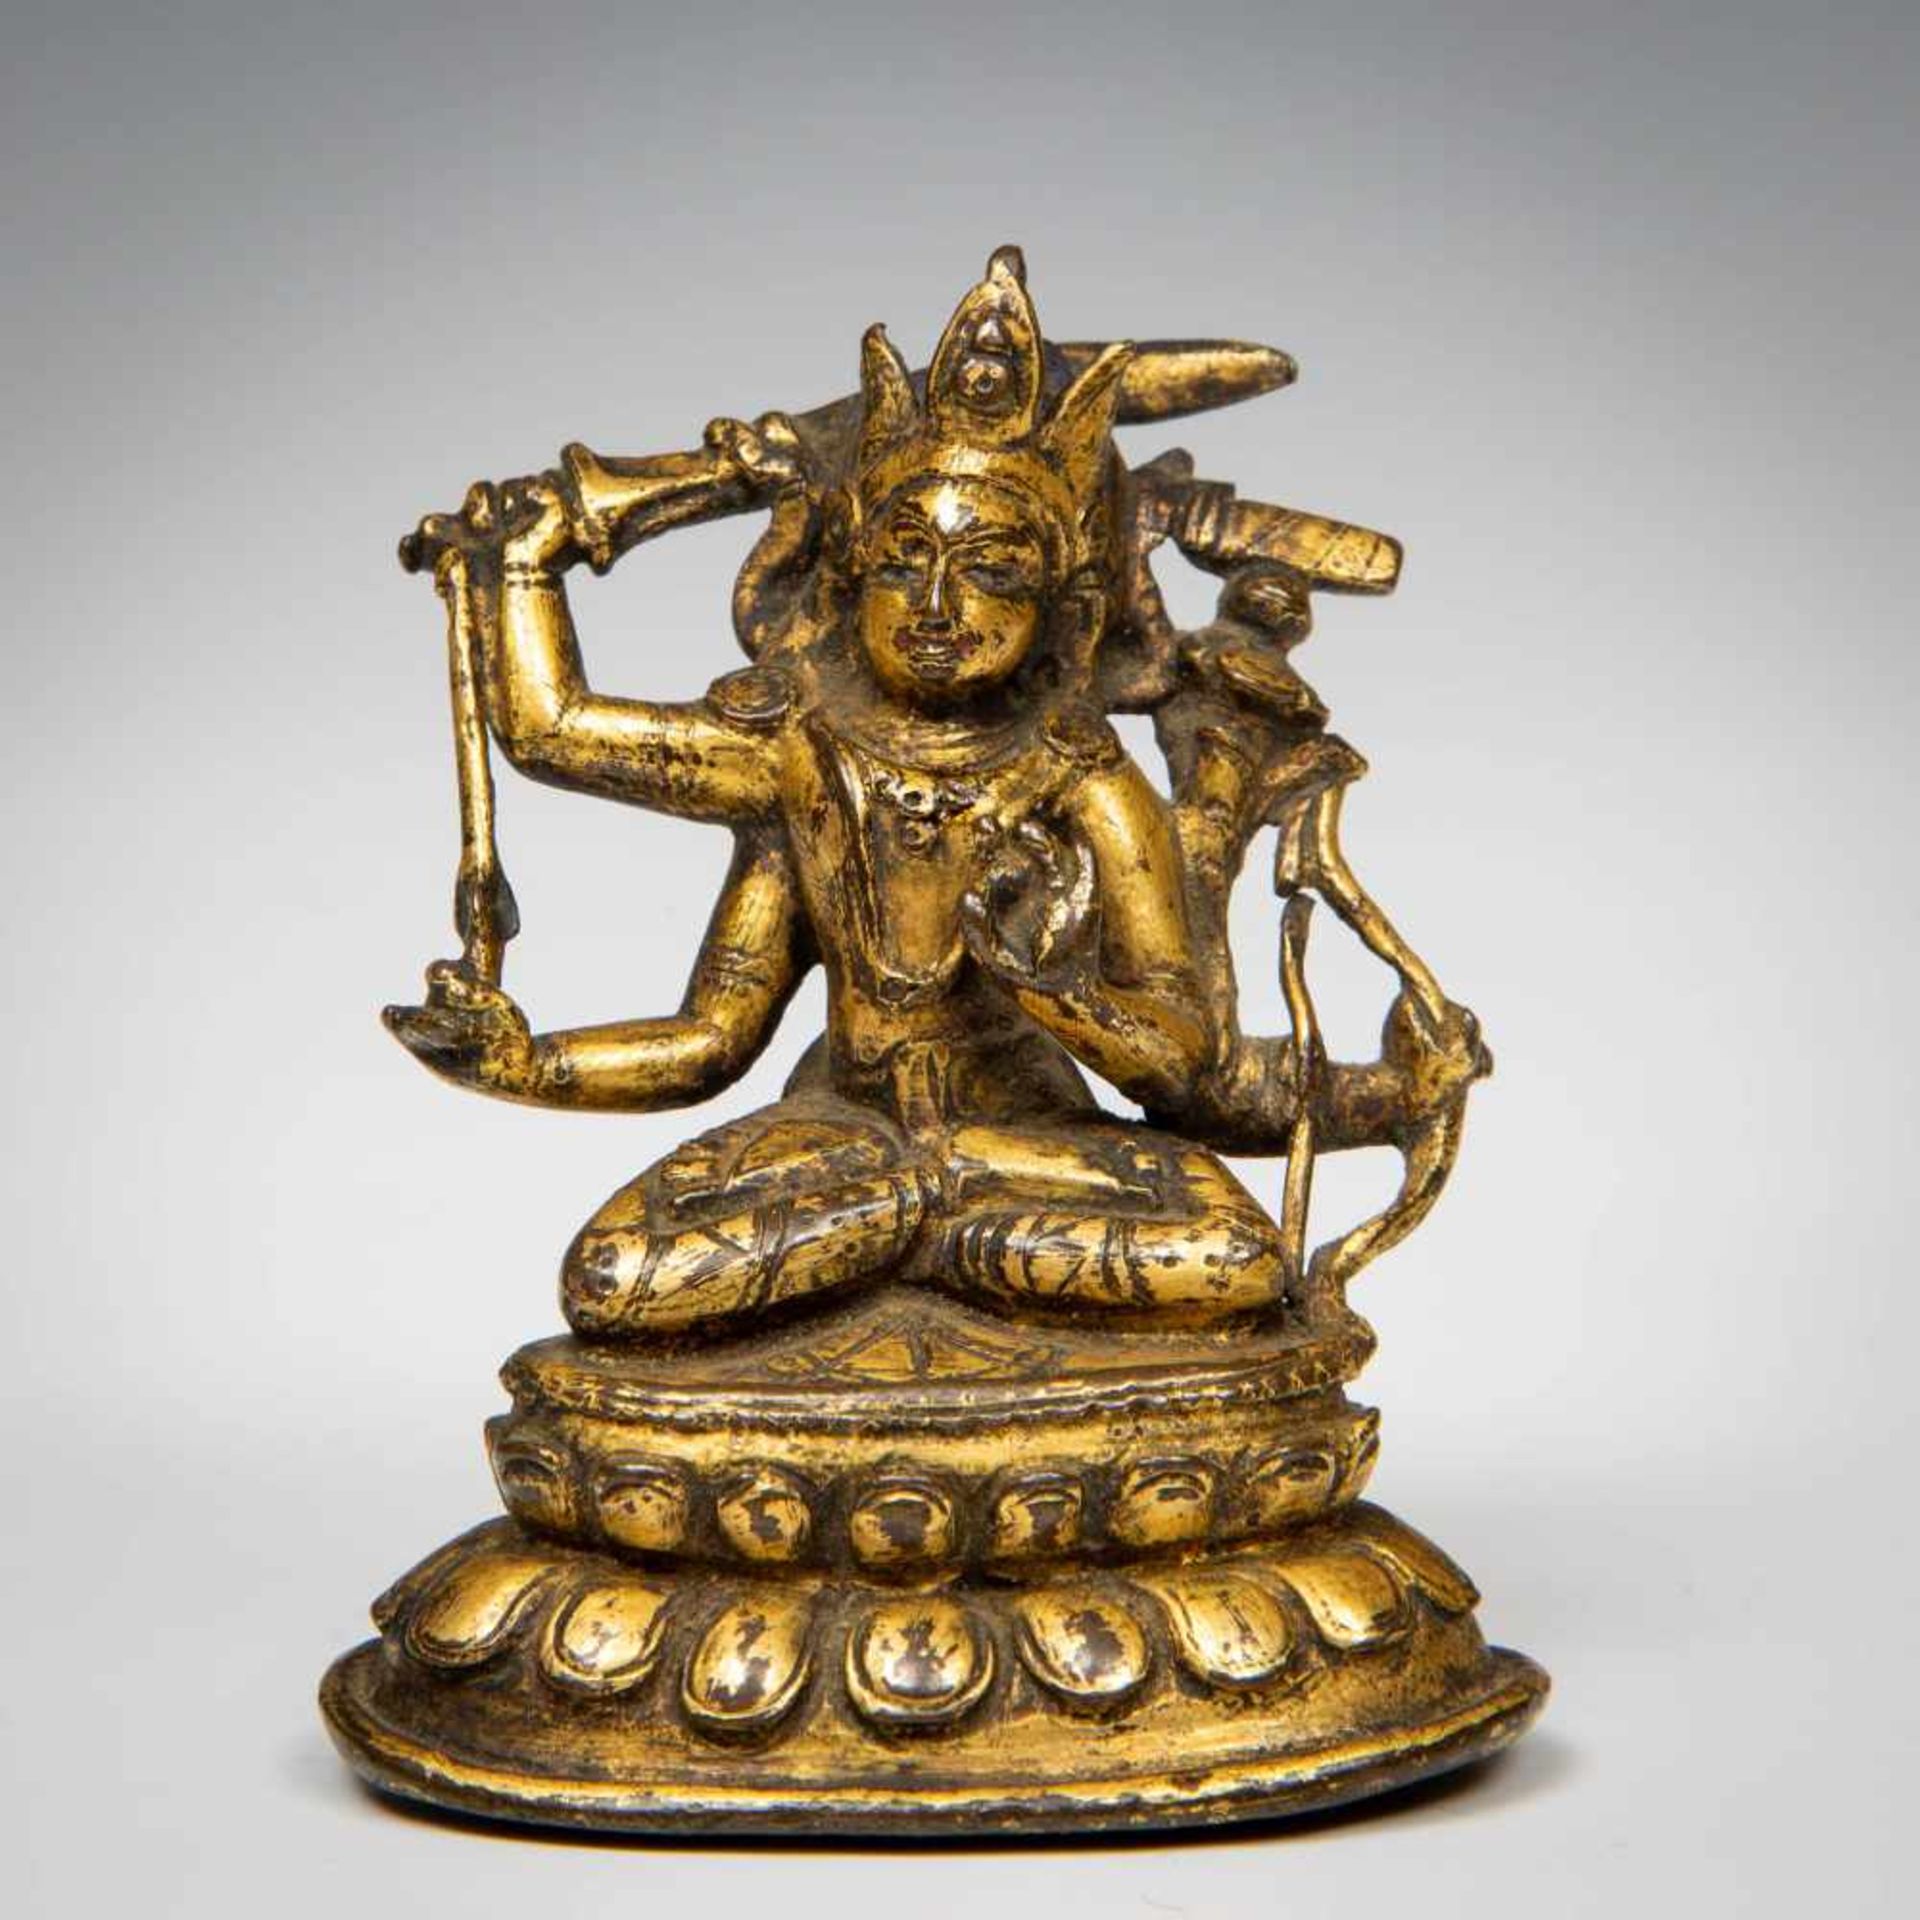 Tibet, verguld bronzen sculptuur Manjuvajra, Boddisathva, bestrijder van onwetendheid, godheid van